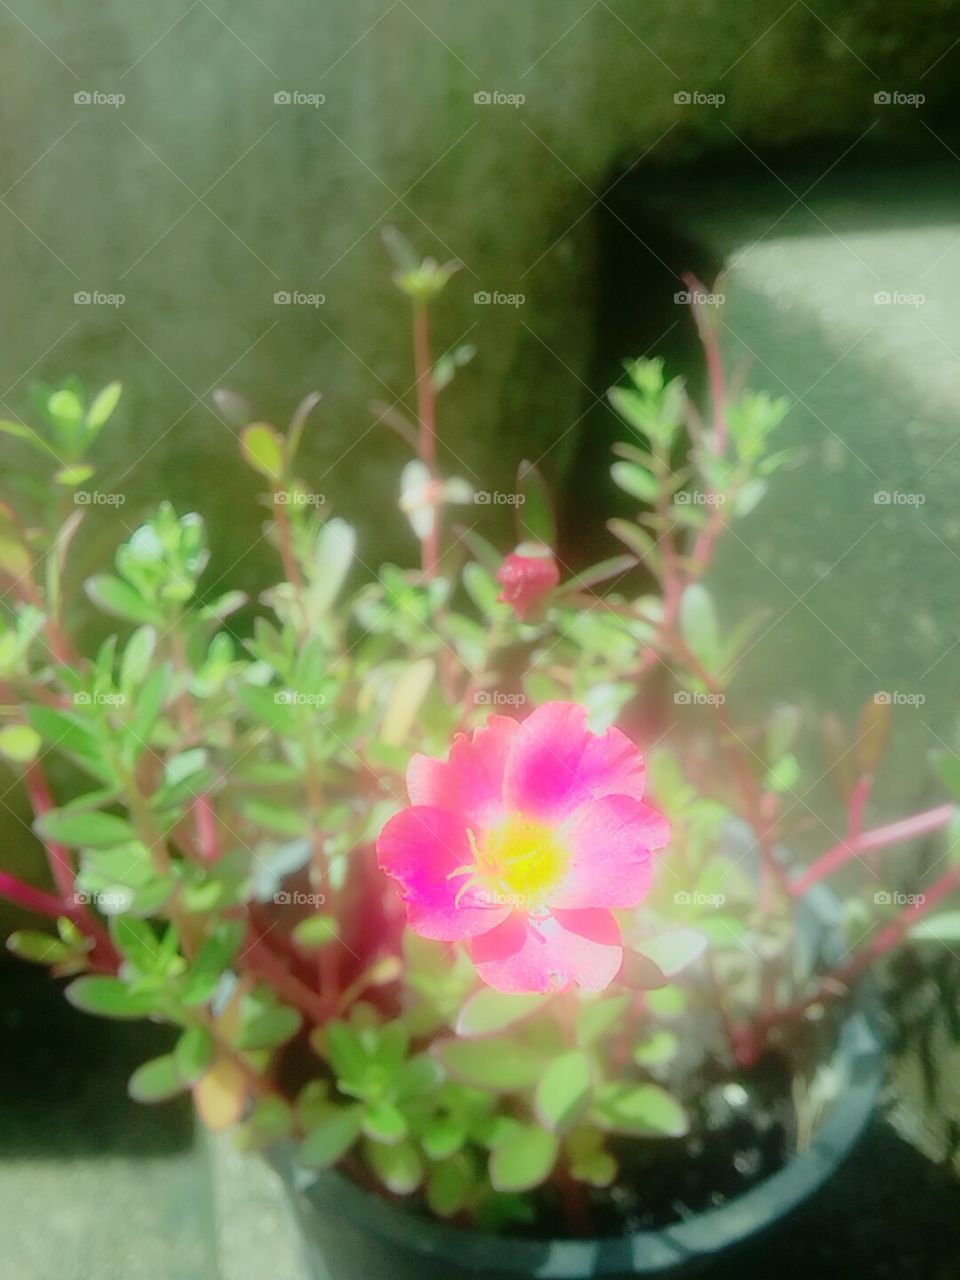 Flower in Sunlight